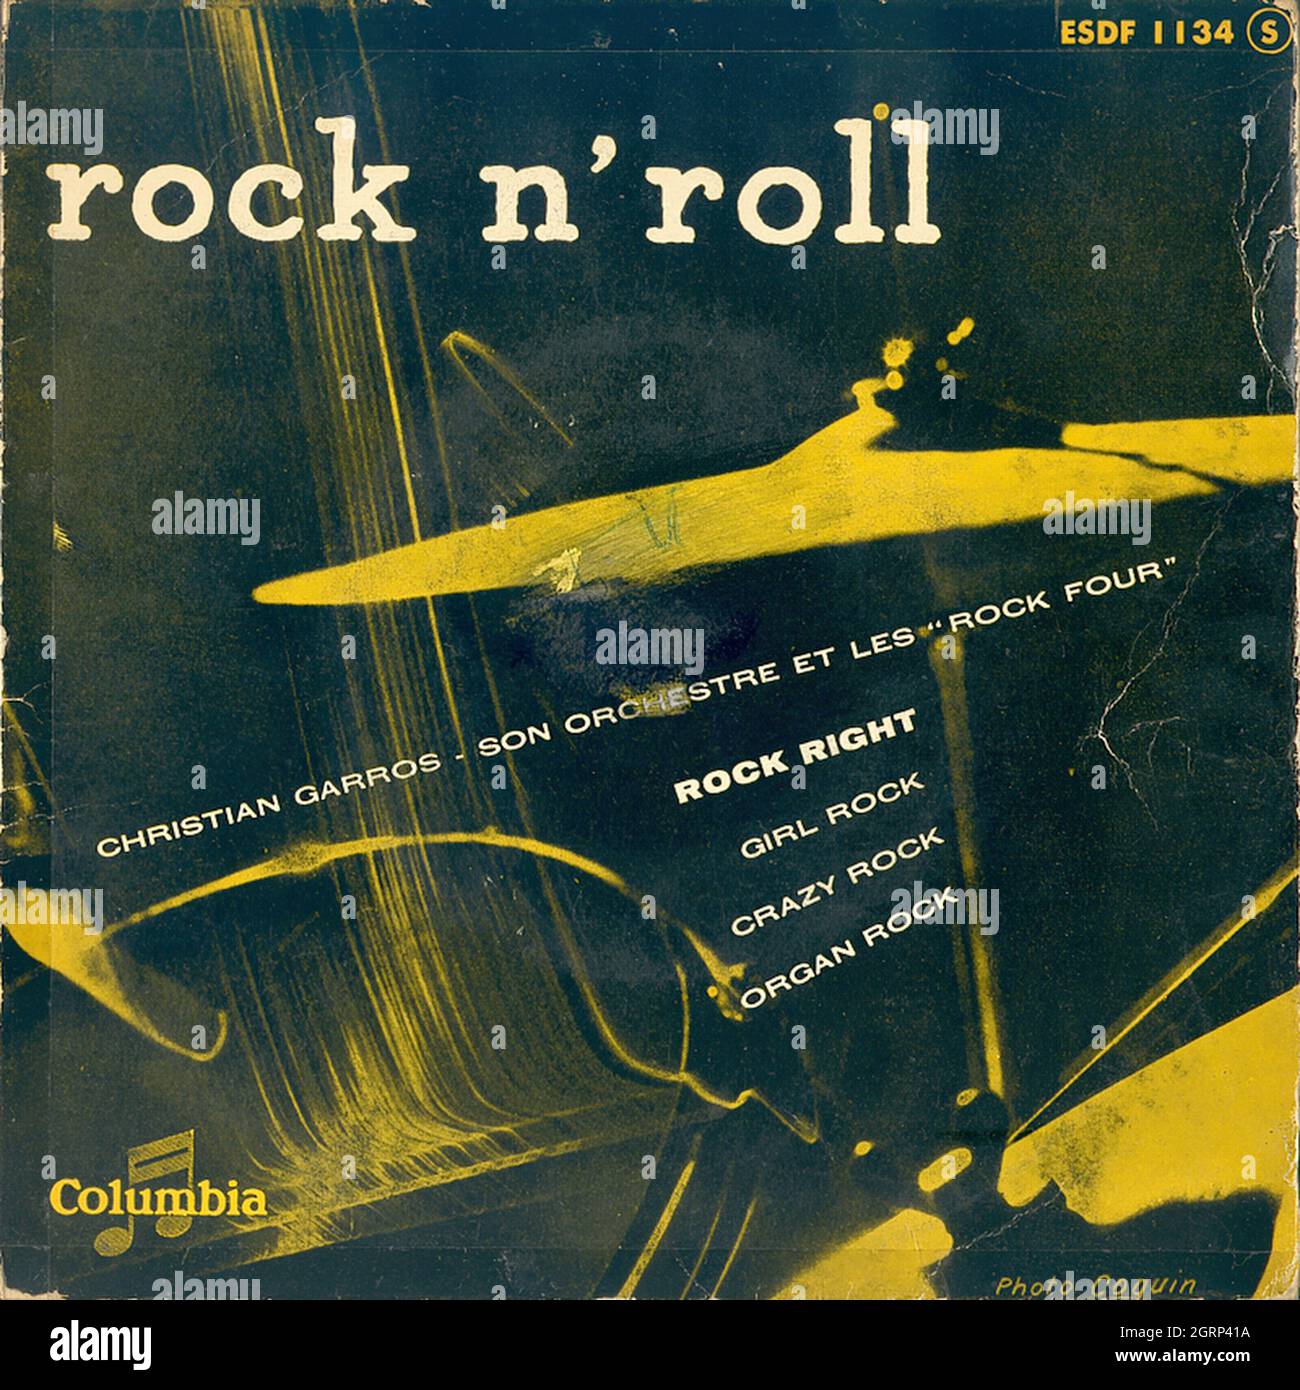 Christian Garros, son orchestre et les ''Rock four'' - Rock'n Roll EP - Vintage Vinyl Record Cover Banque D'Images